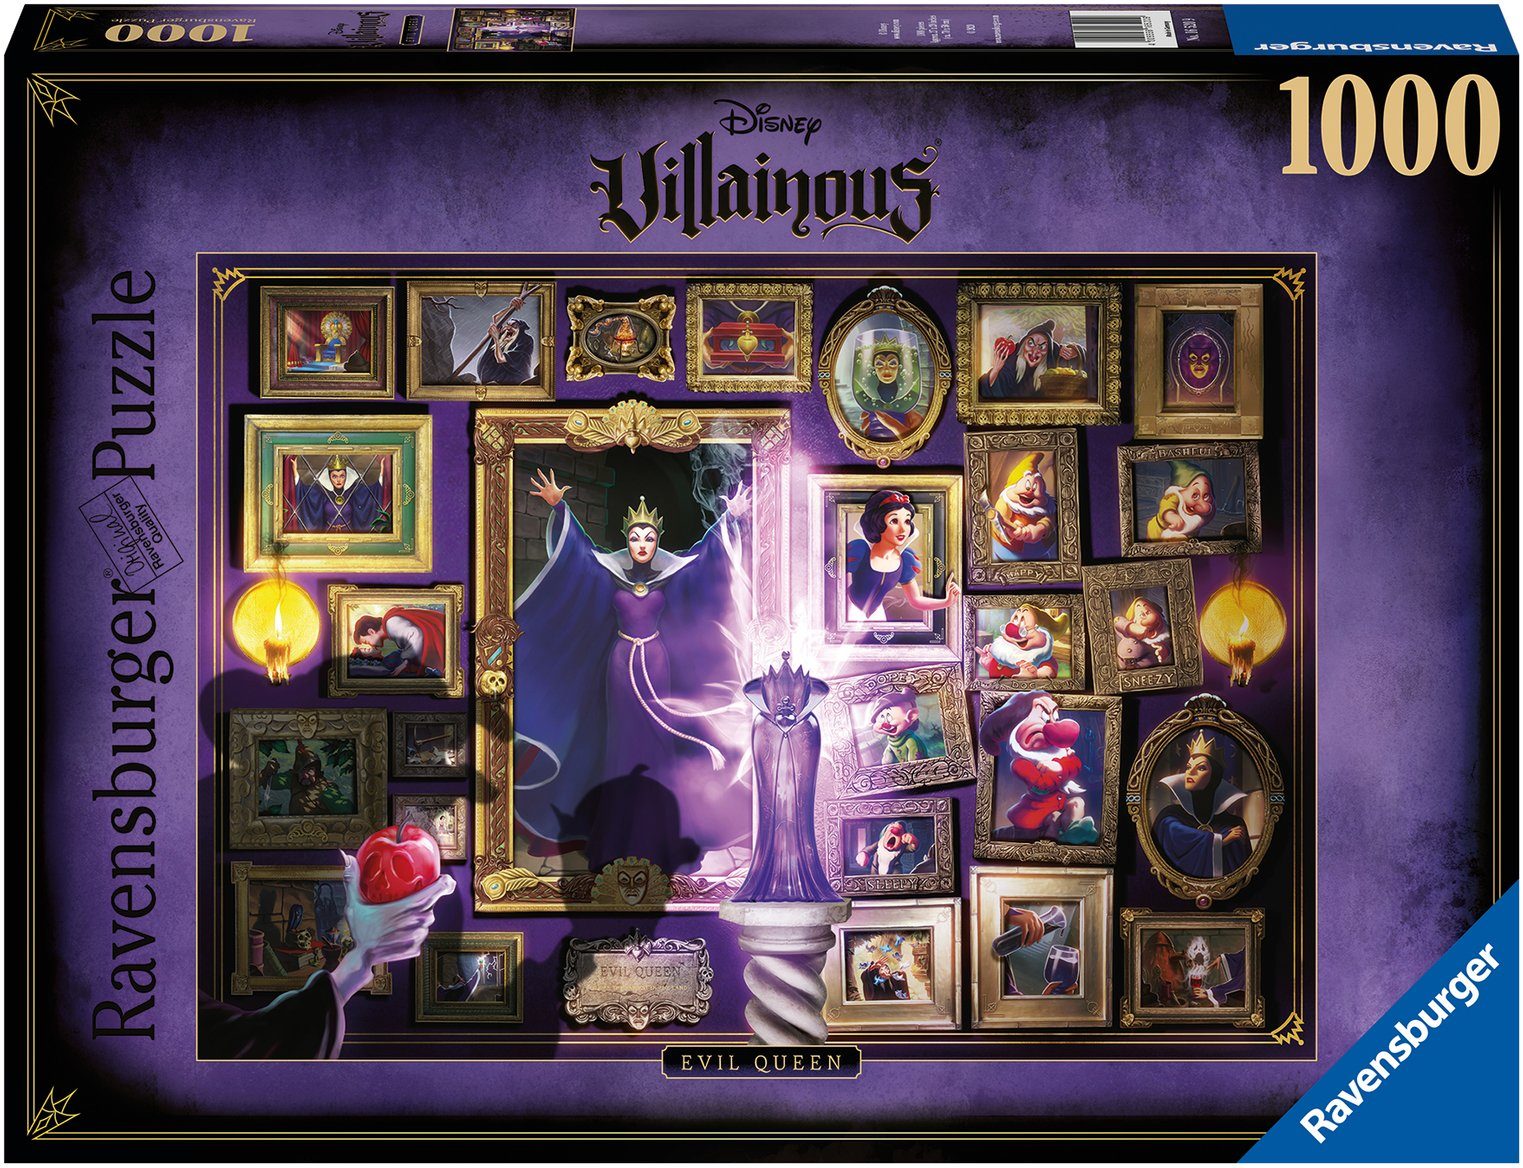 Ravensburger Puzzle Disney Villainous - Evil Queen, 1000 Puzzleteile, Made in Germany, FSC® - schützt Wald - weltweit